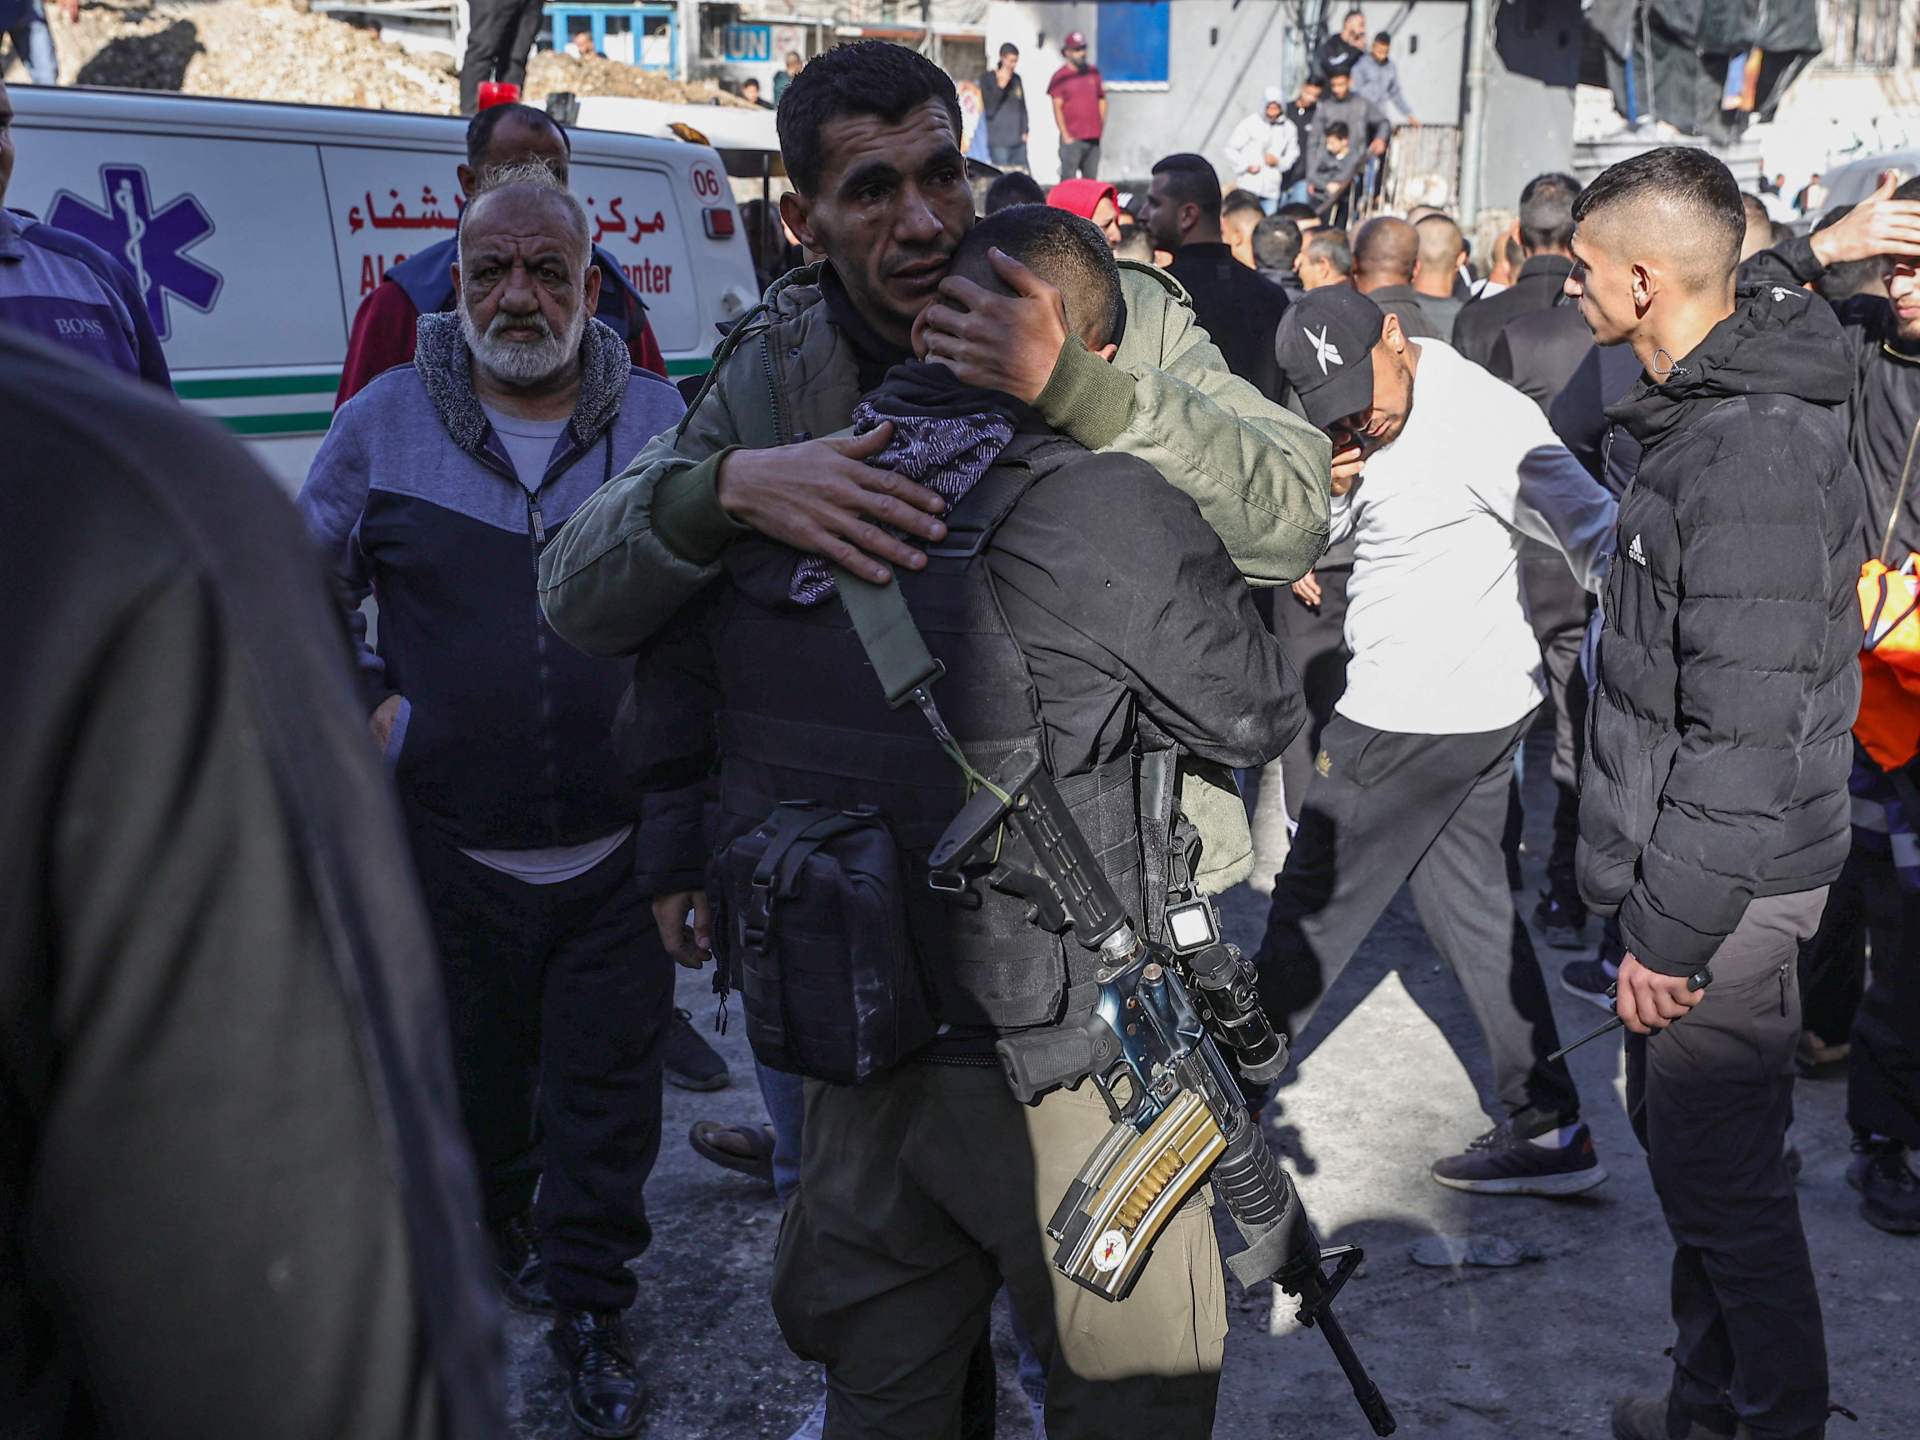 إصابات واقتحامات وارتفاع عدد المعتقلين في الضفة الغربية | أخبار – البوكس نيوز